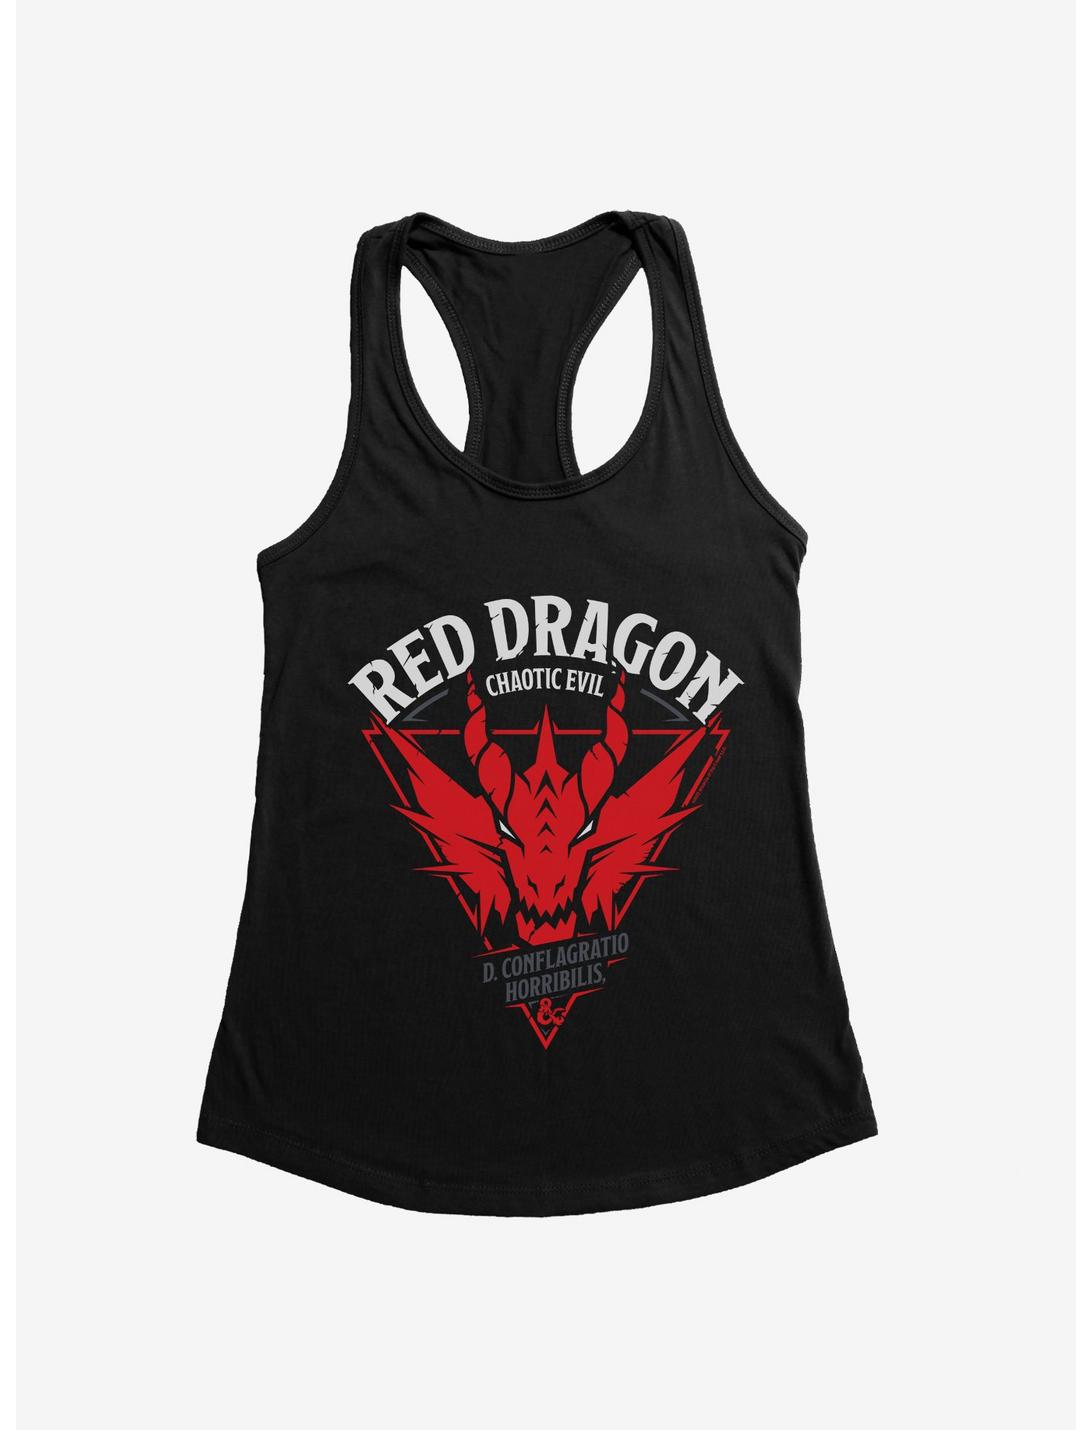 Dungeons & Dragons Red Dragon Girls Tank, BLACK, hi-res